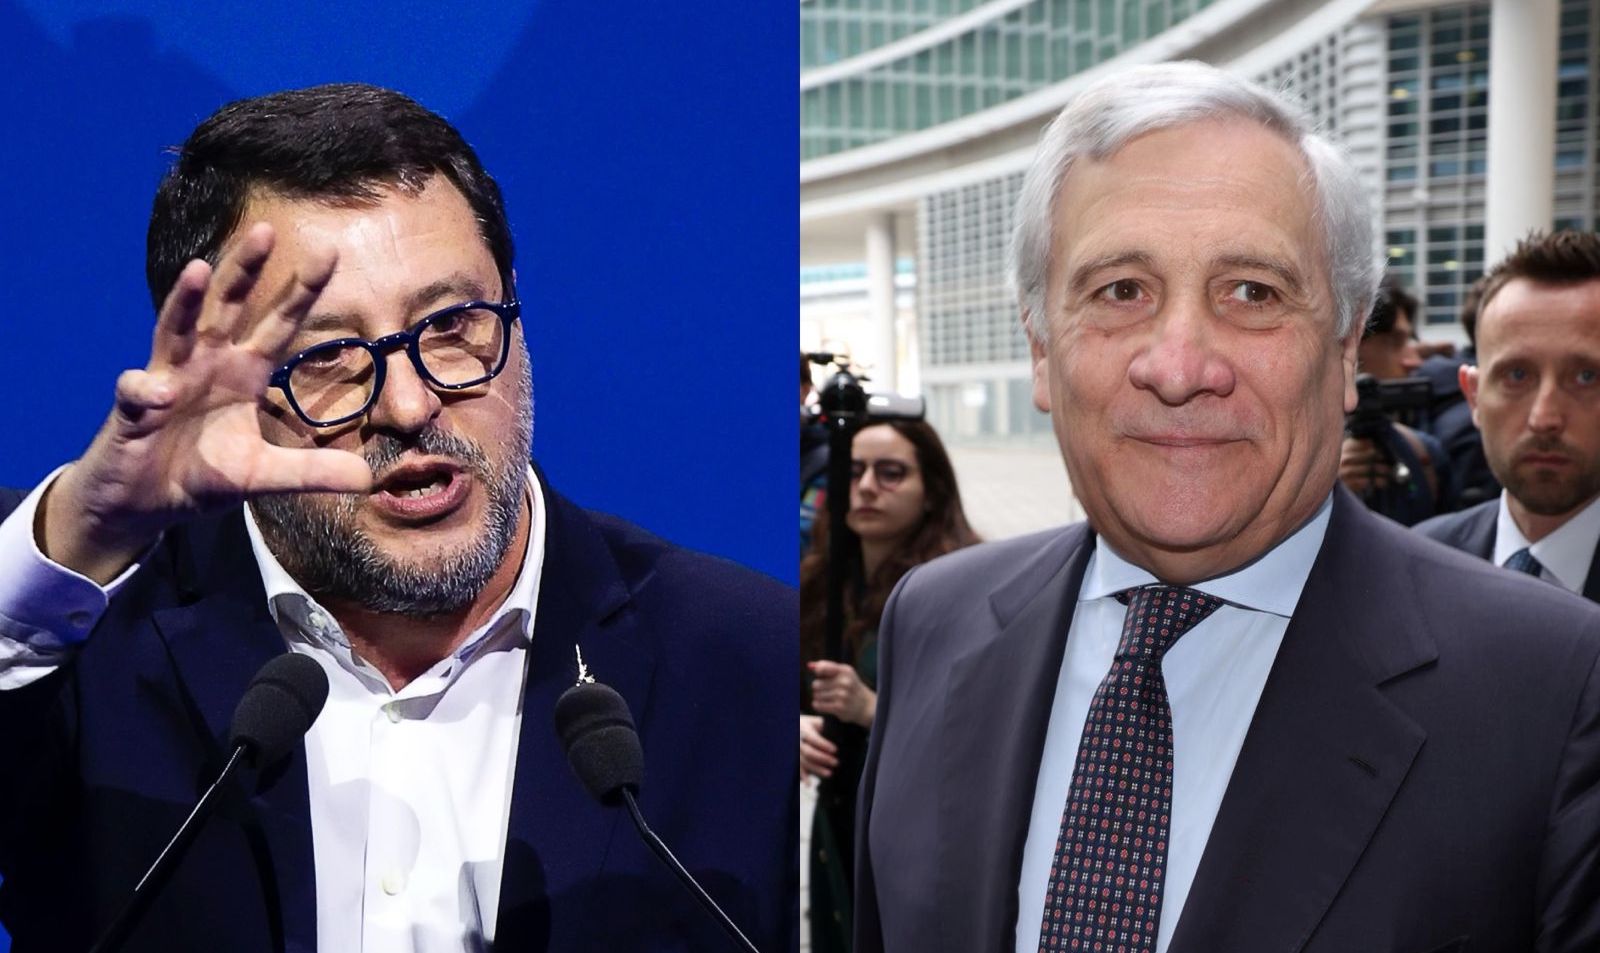 Nella gara fra Salvini e Tajani per le prossime europee la Lega ha il fattore campo dalla sua: nel sud si vota meno